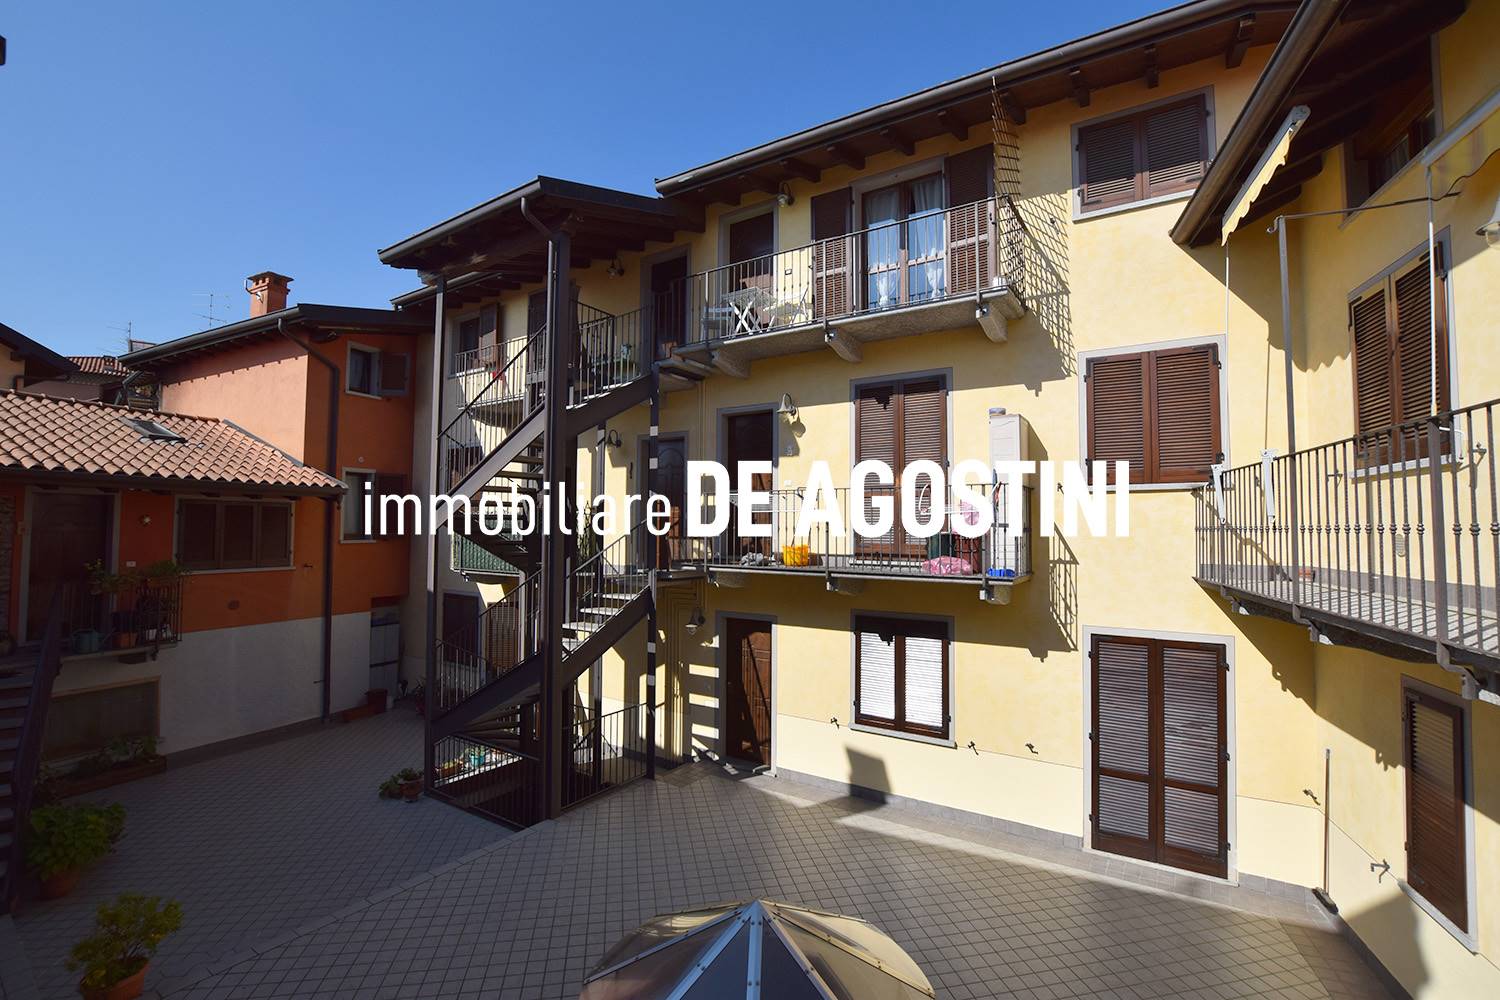 Appartamento in vendita a Massino Visconti, 6 locali, prezzo € 158.000 | PortaleAgenzieImmobiliari.it